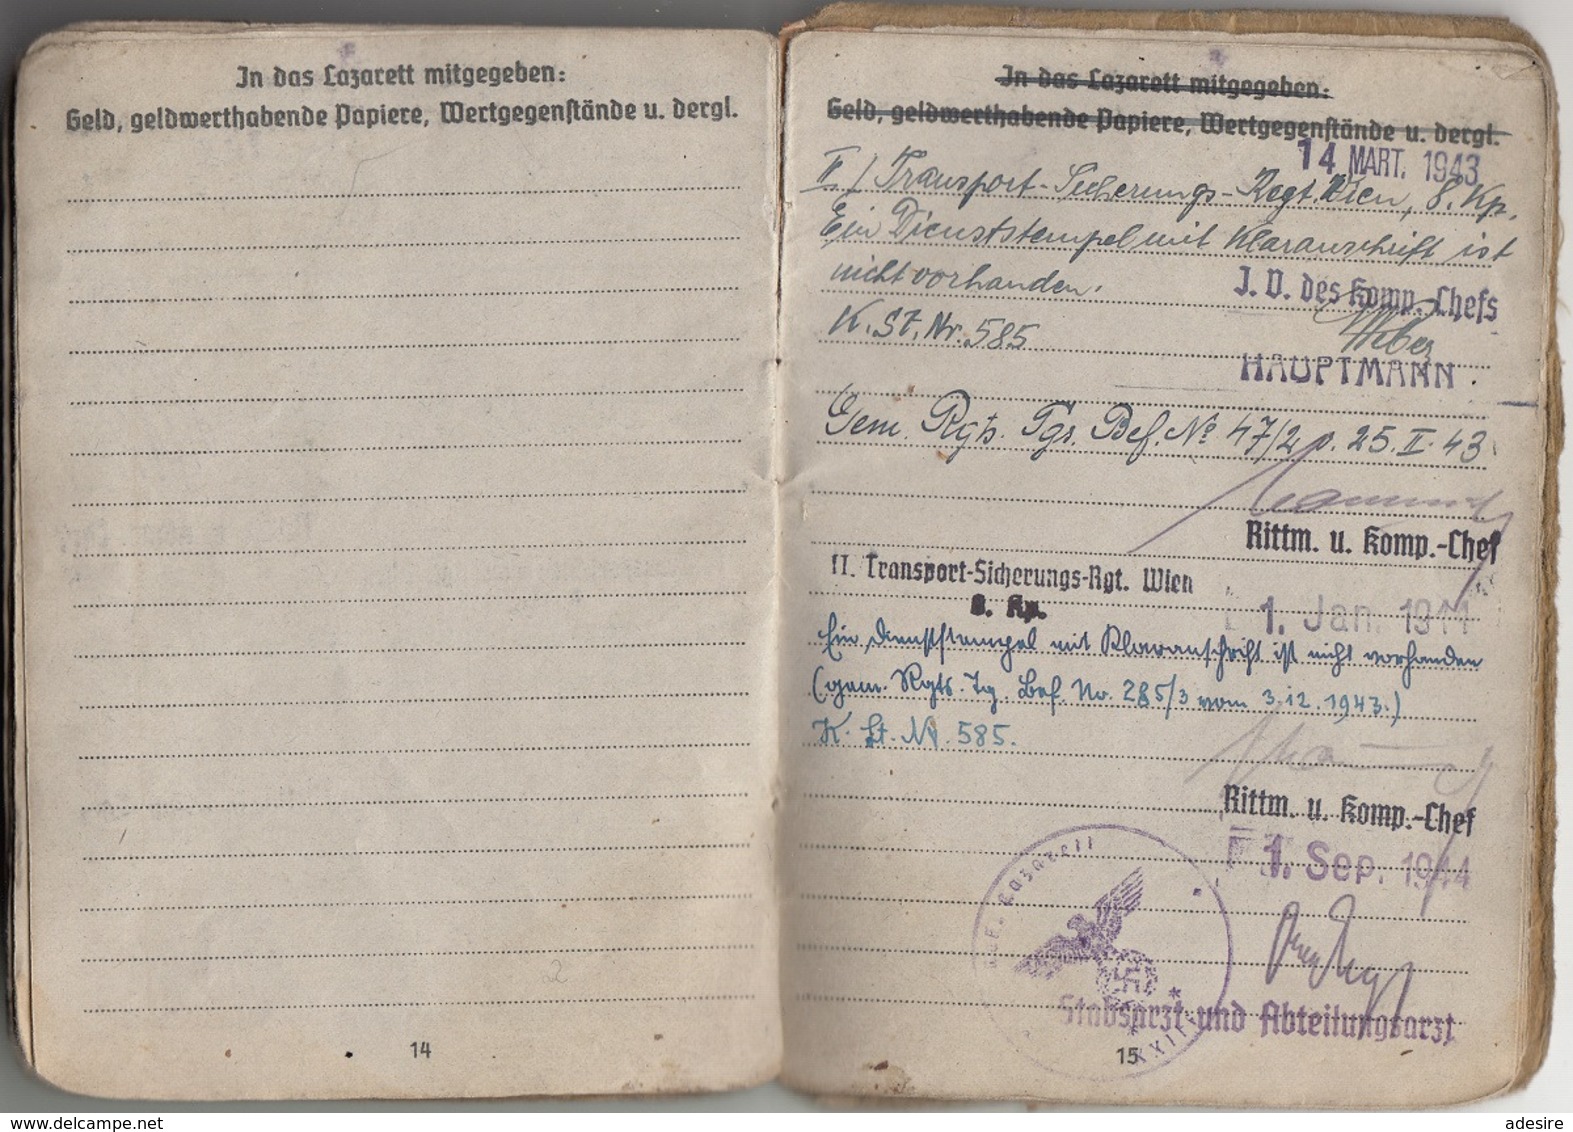 RRR! SOLDBUCH zgl. PERSONALAUSWEIS eines OBERSCHÜTZTEN 1942 GEFREITER ab 1944 des 7 Inf.Ersatz Bat. II, 24 Seiten mit ..